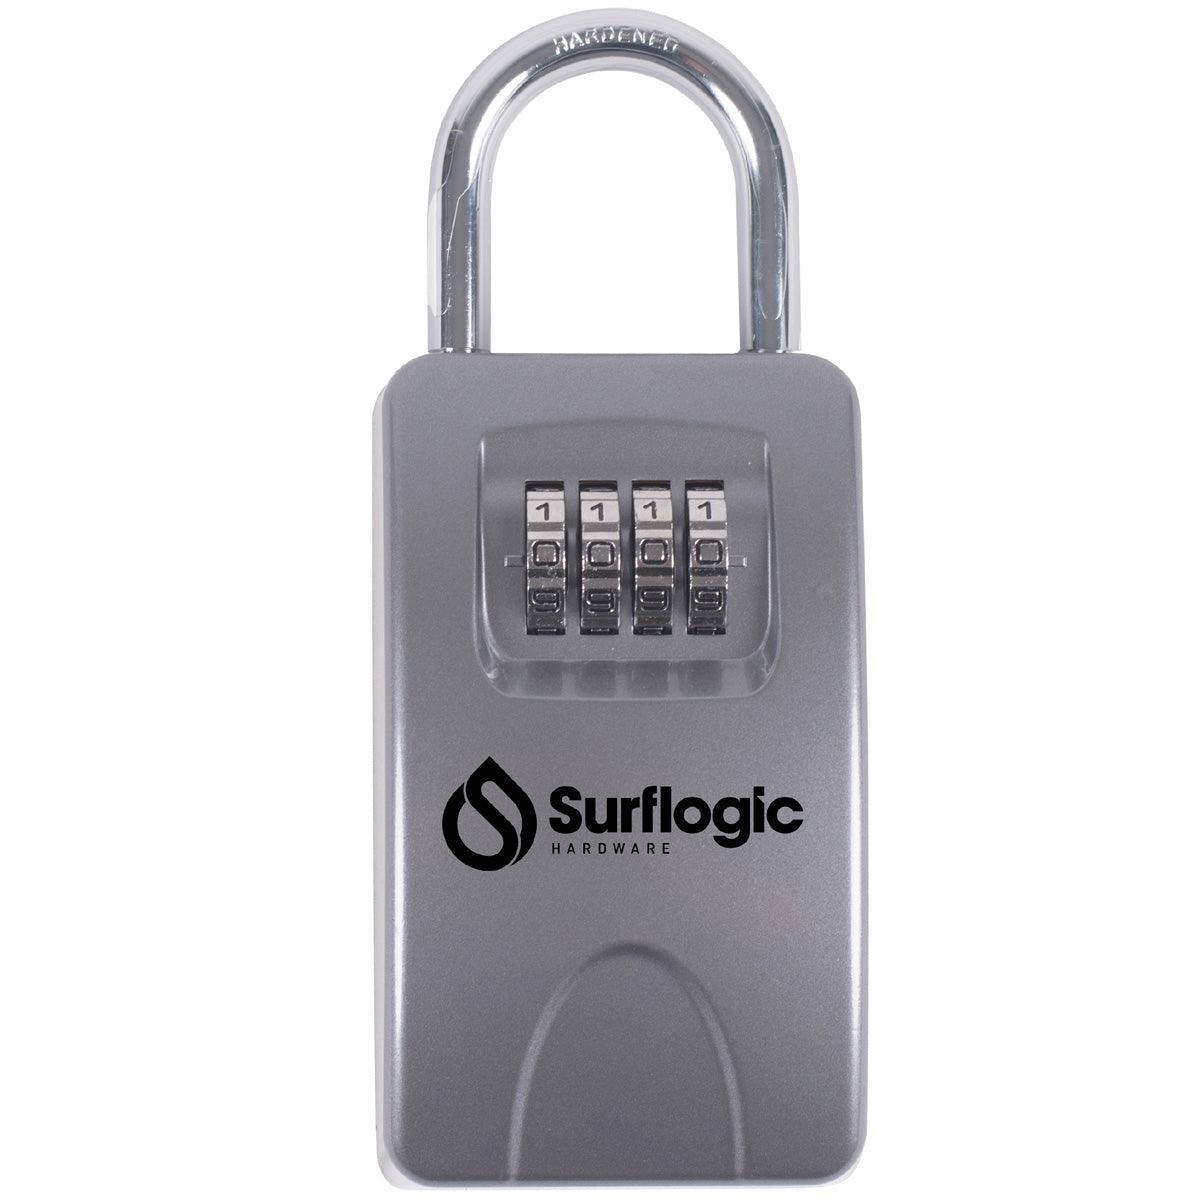 Surflogic Key Lock Maxi - Kiteshop.com